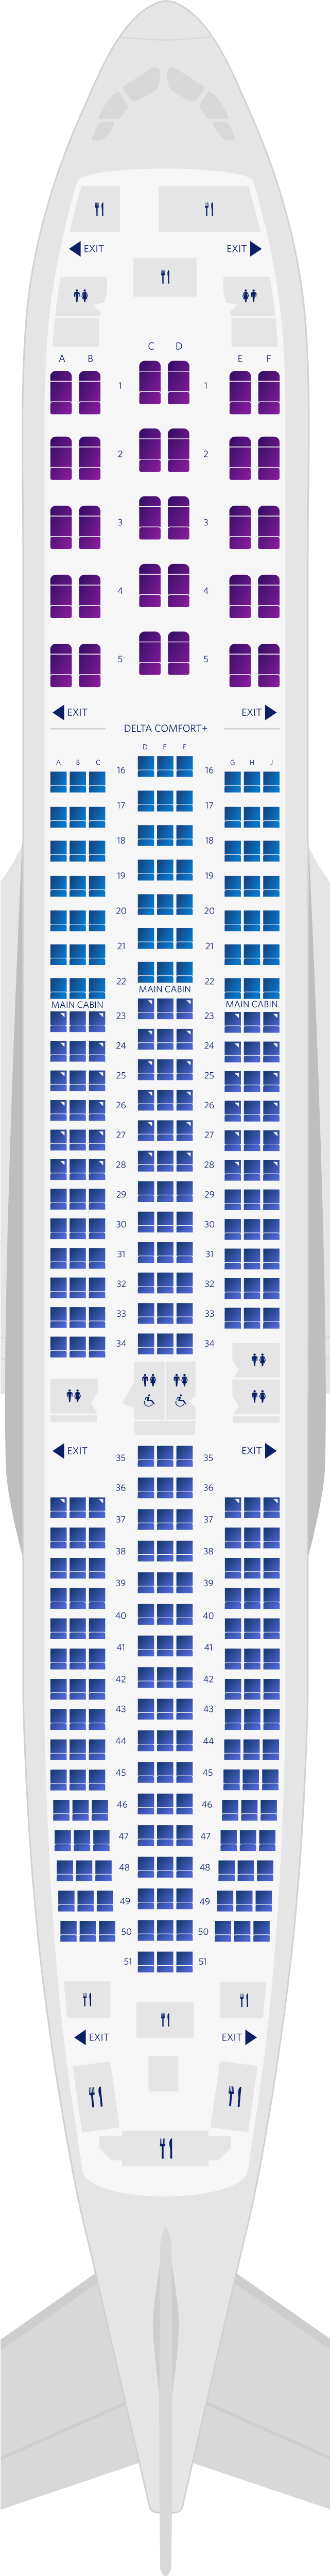 에어버스 A350-900 3-객실 좌석 배치도